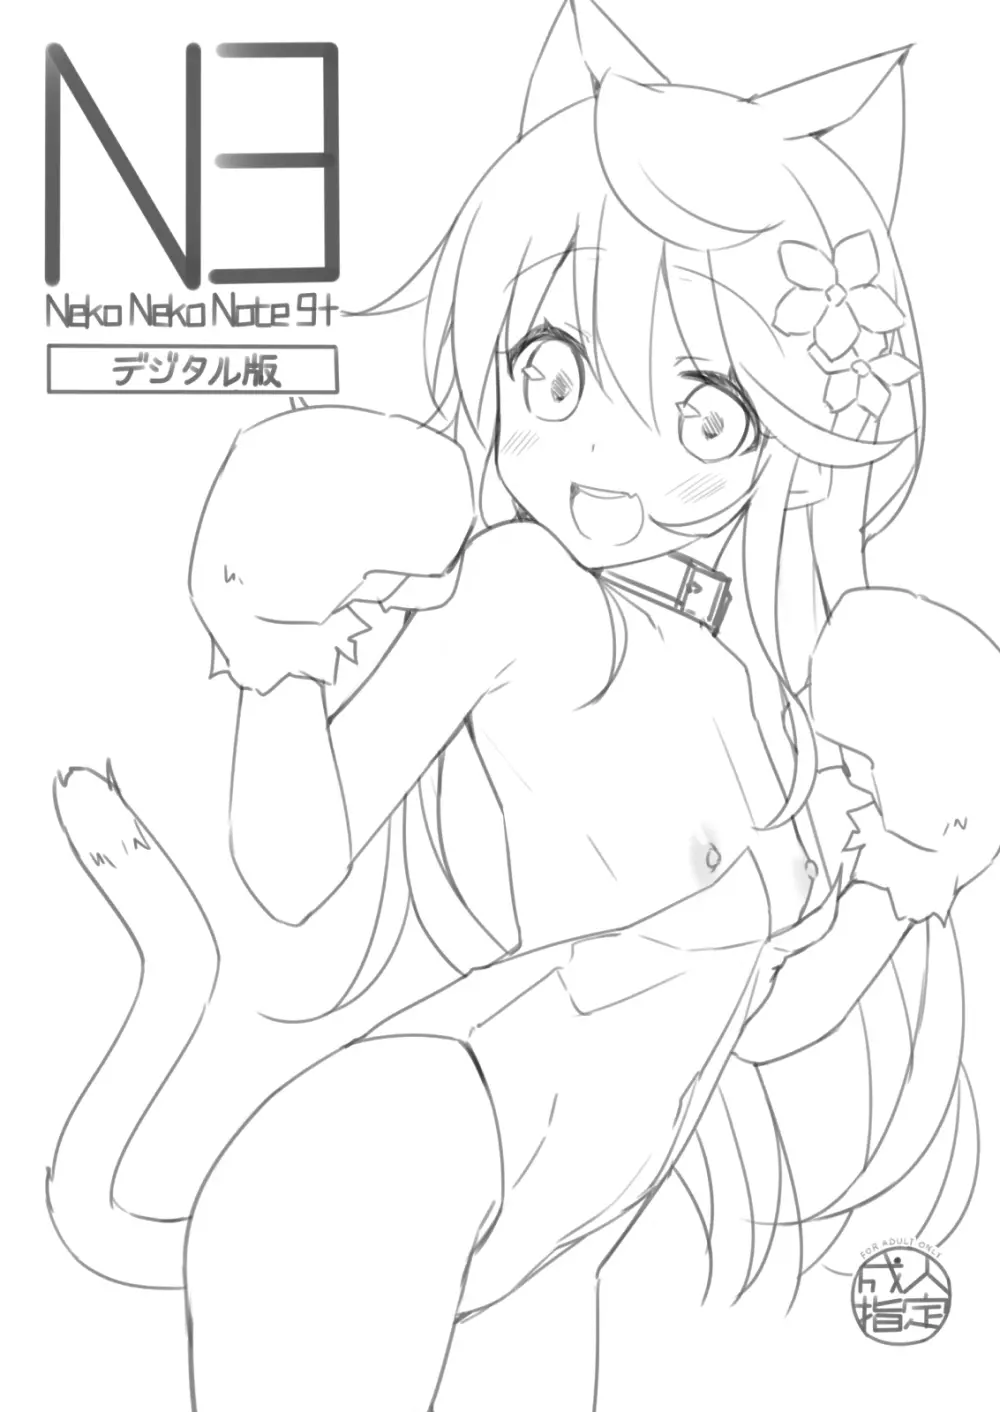 Neko Neko Note 9+ 1ページ